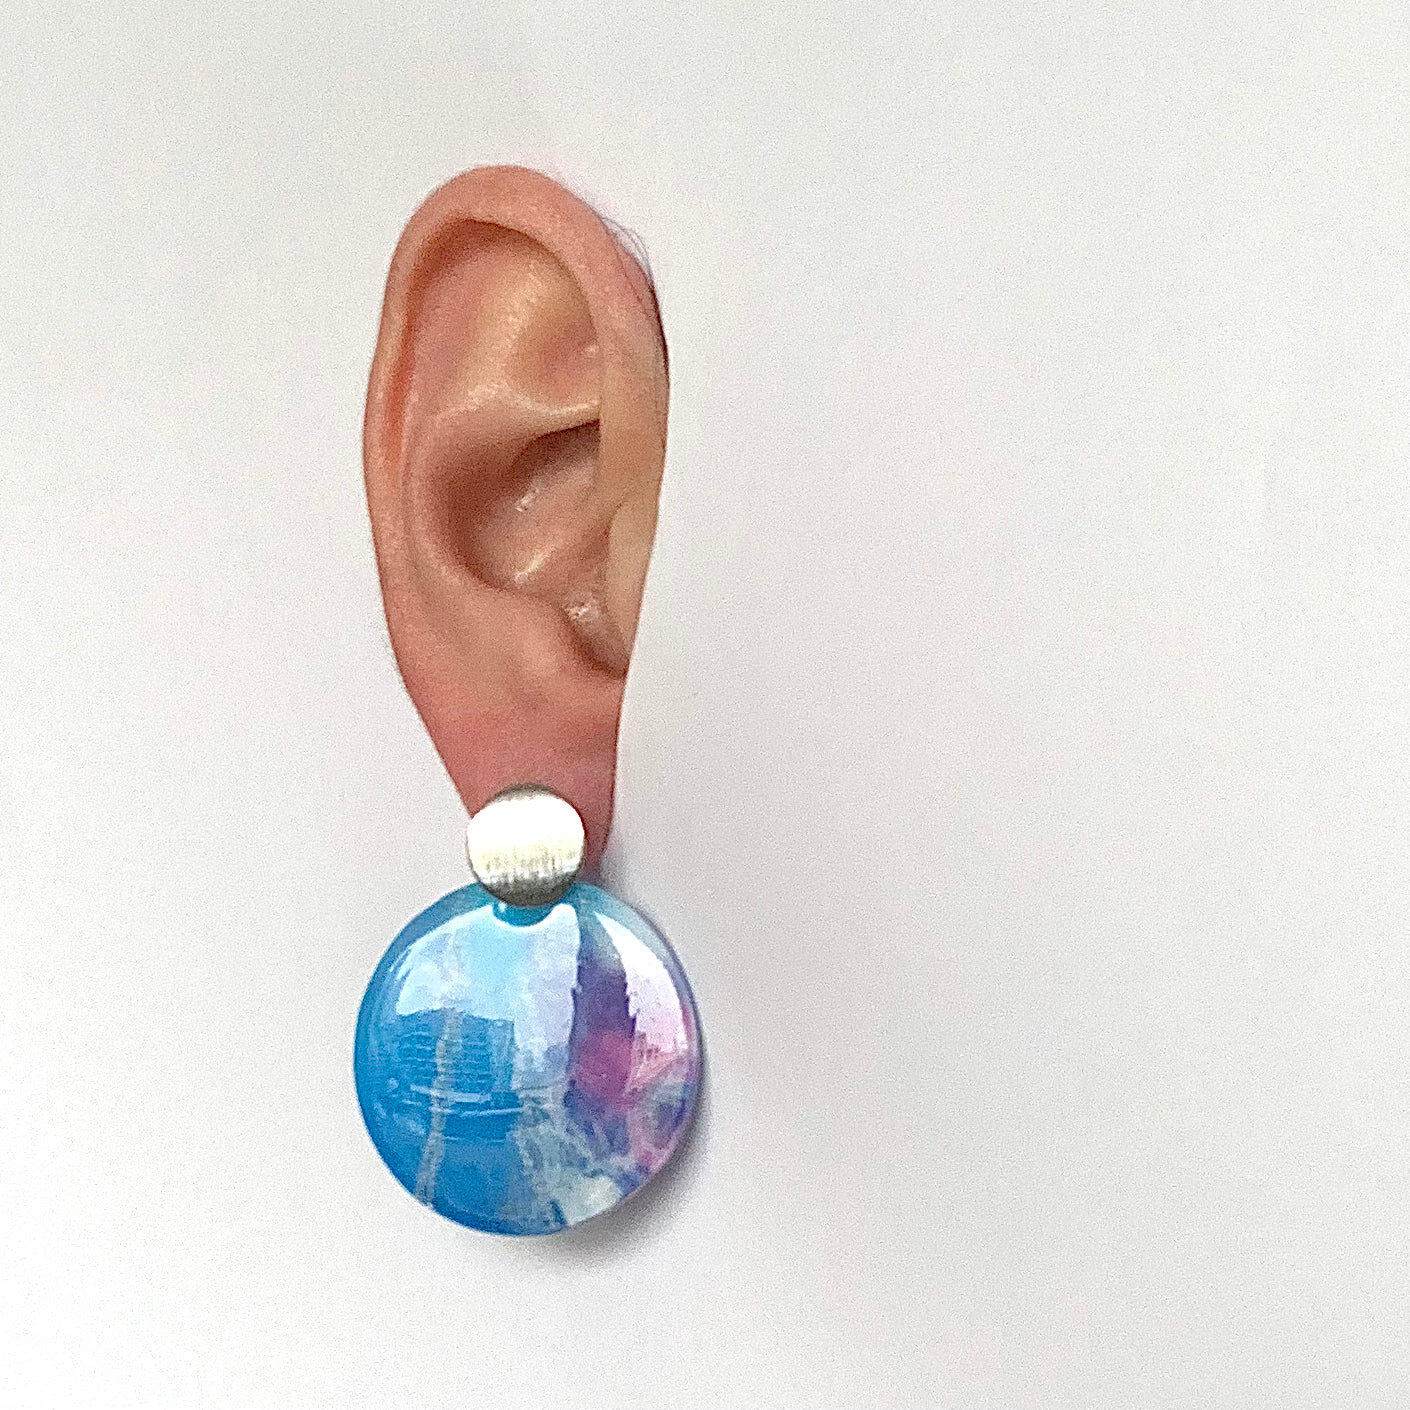 Cherry Blossom recycled plastic bottle tops earrings handmade in London artesian